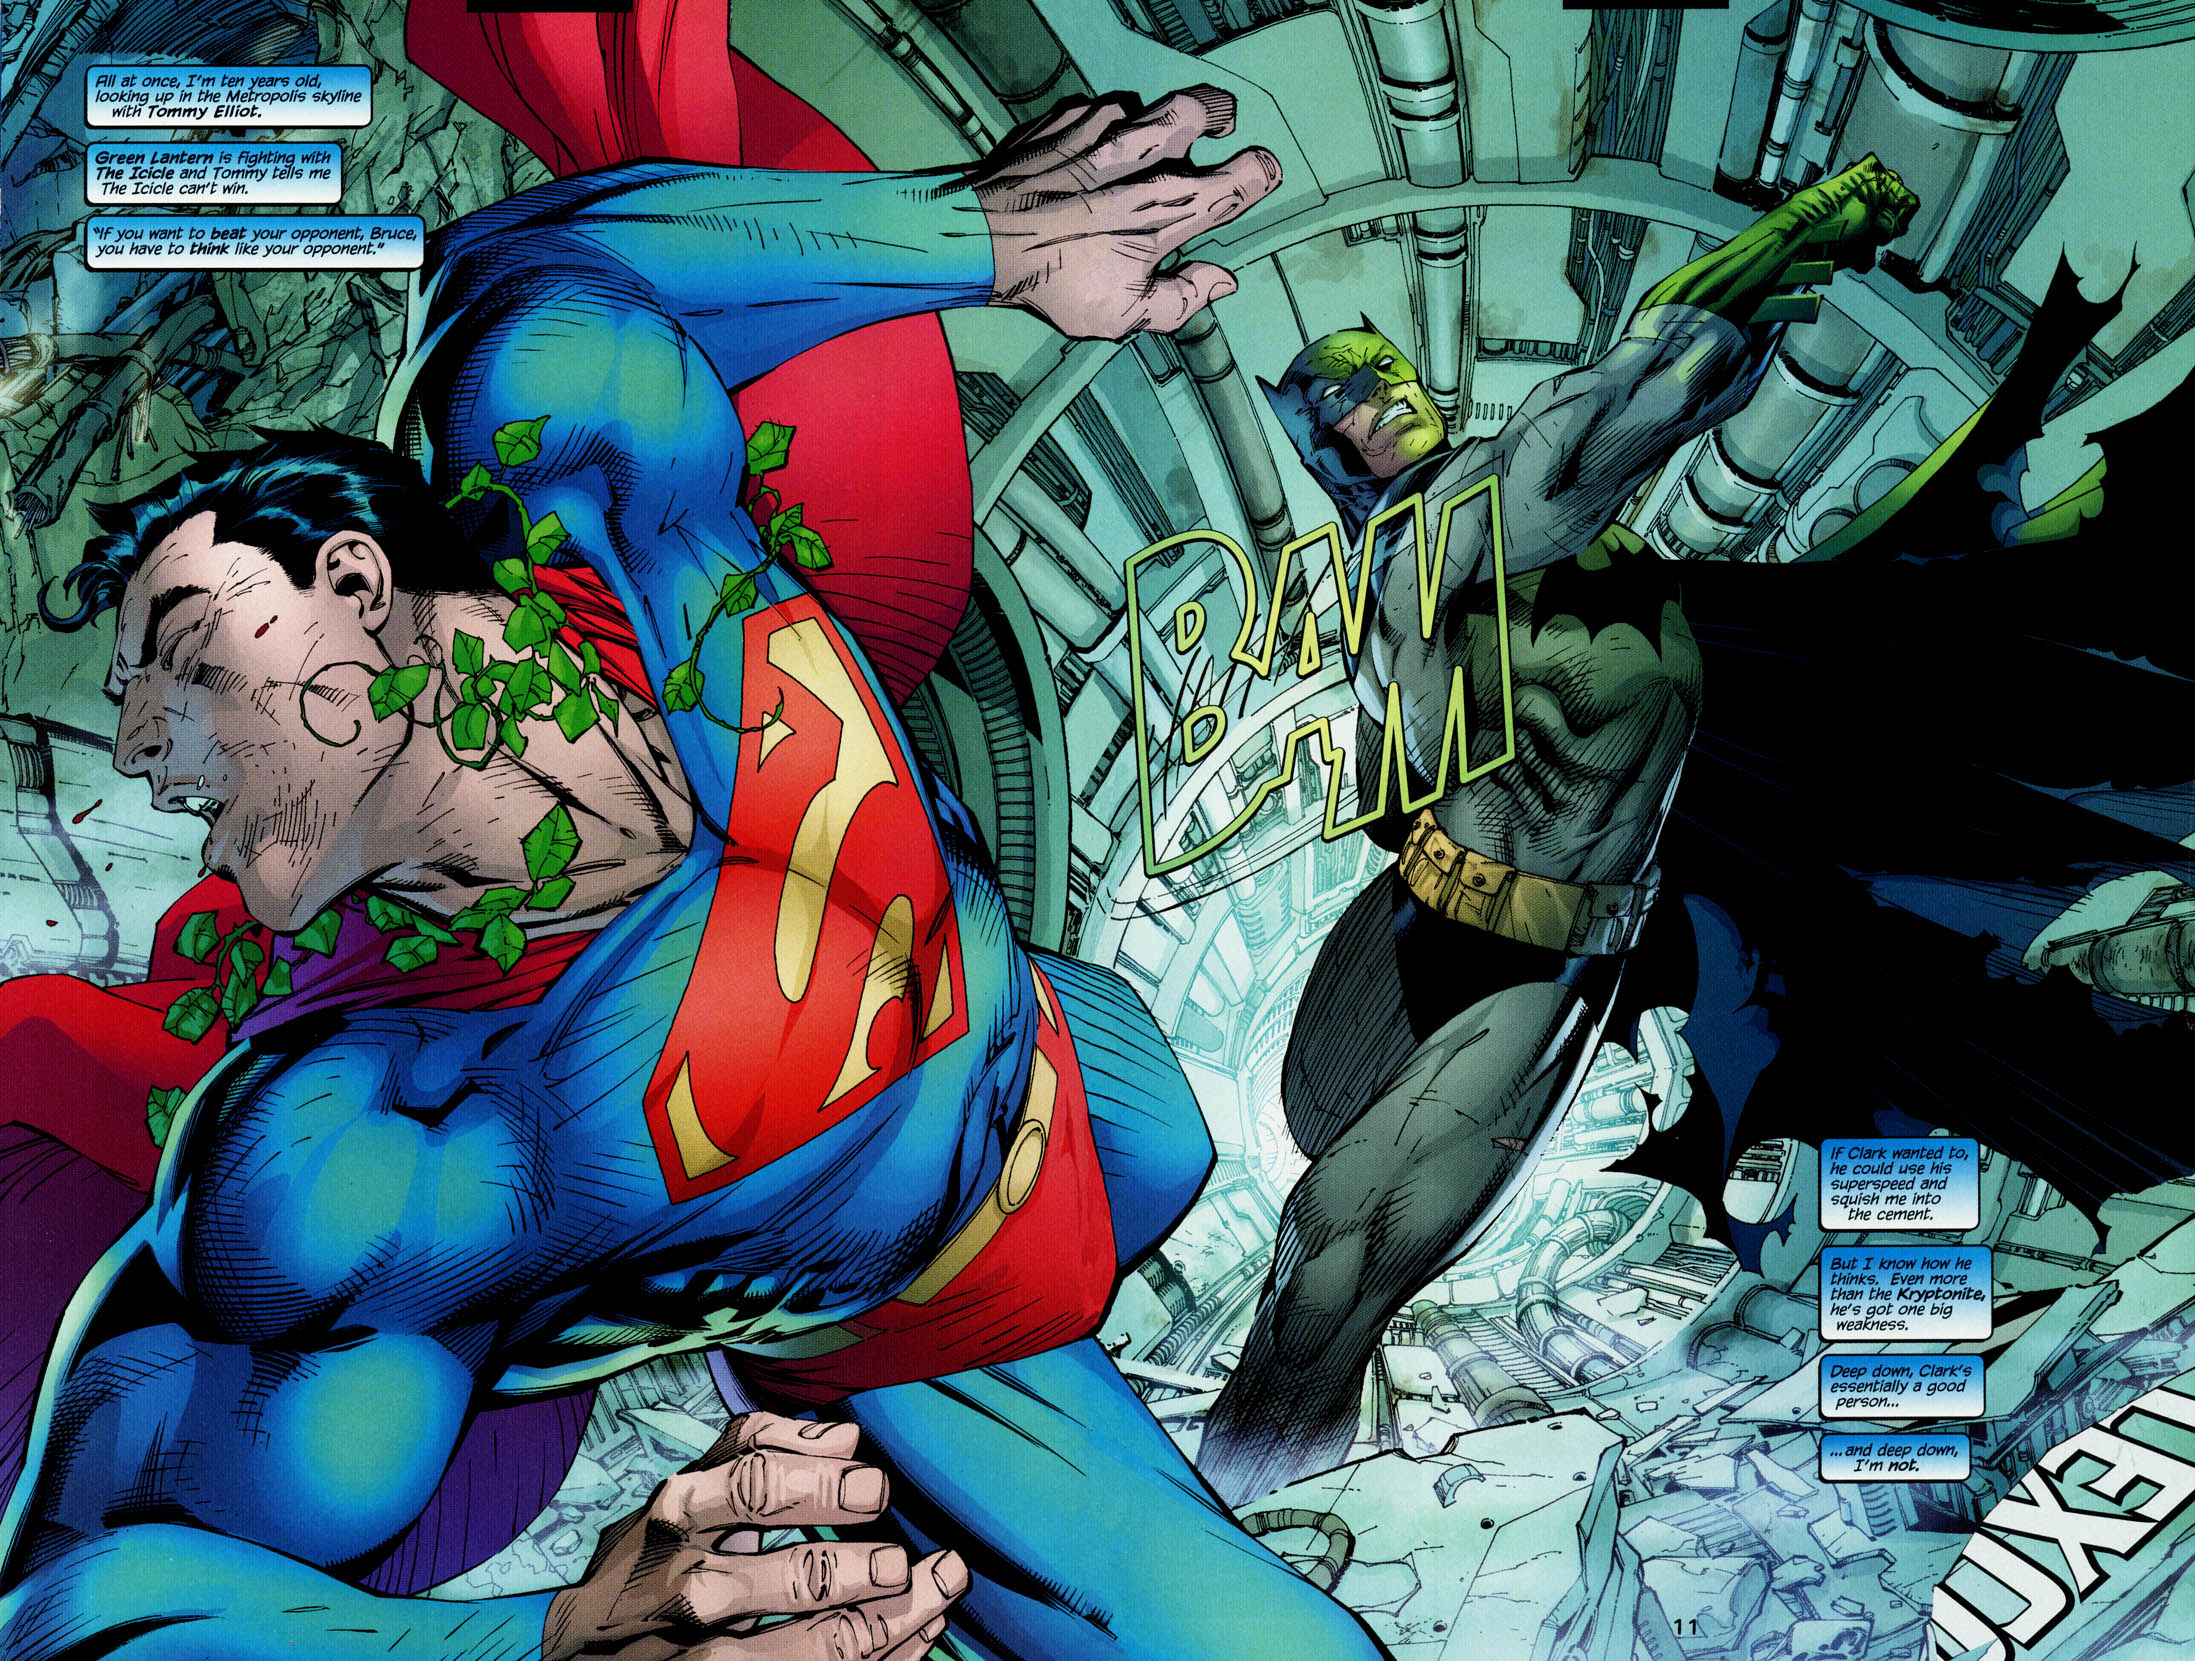 Batman, DC Comics, Superman, superheroes, Jim Lee - desktop wallpaper